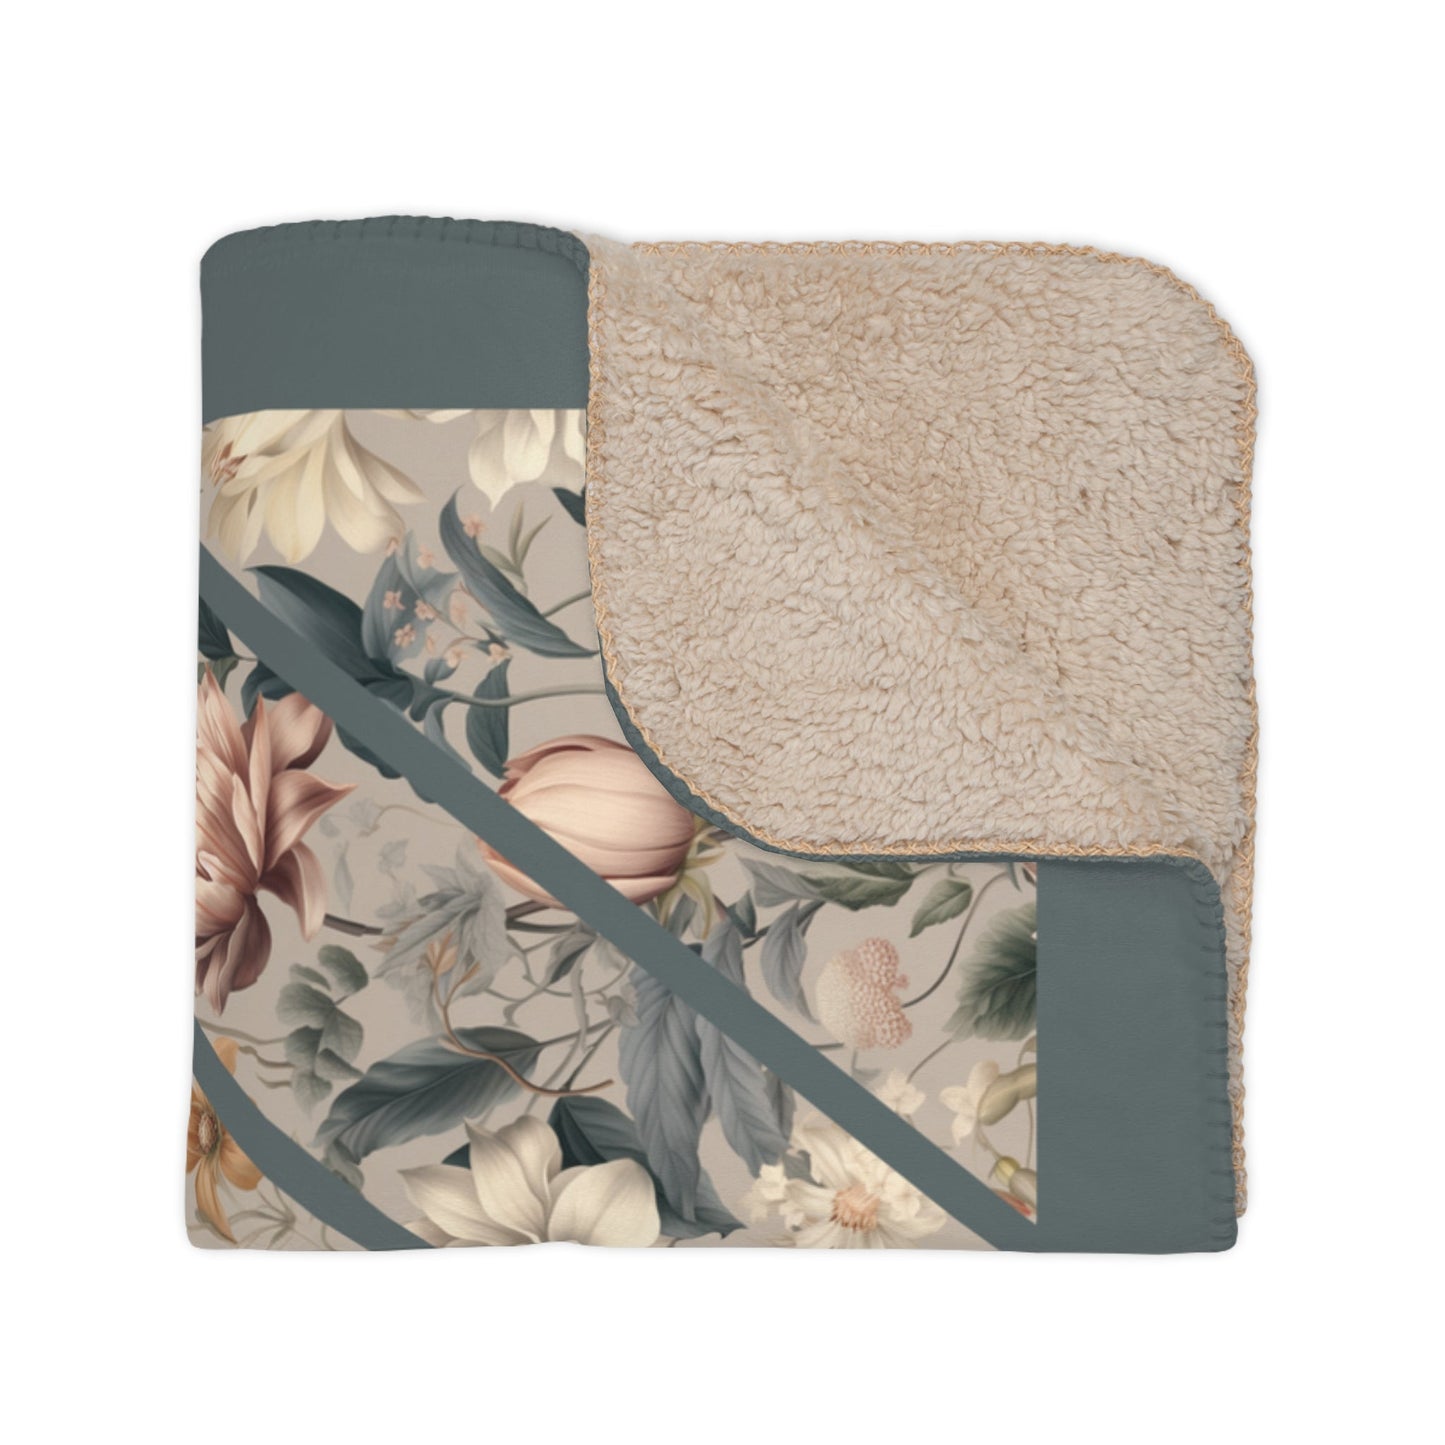 Original Botanical Vintage Throw Blanket, Victorian Style Floral Print, Willam Morris Elegance, Garden Bliss Gift for Mom, Gardener Gift - FlooredByArt